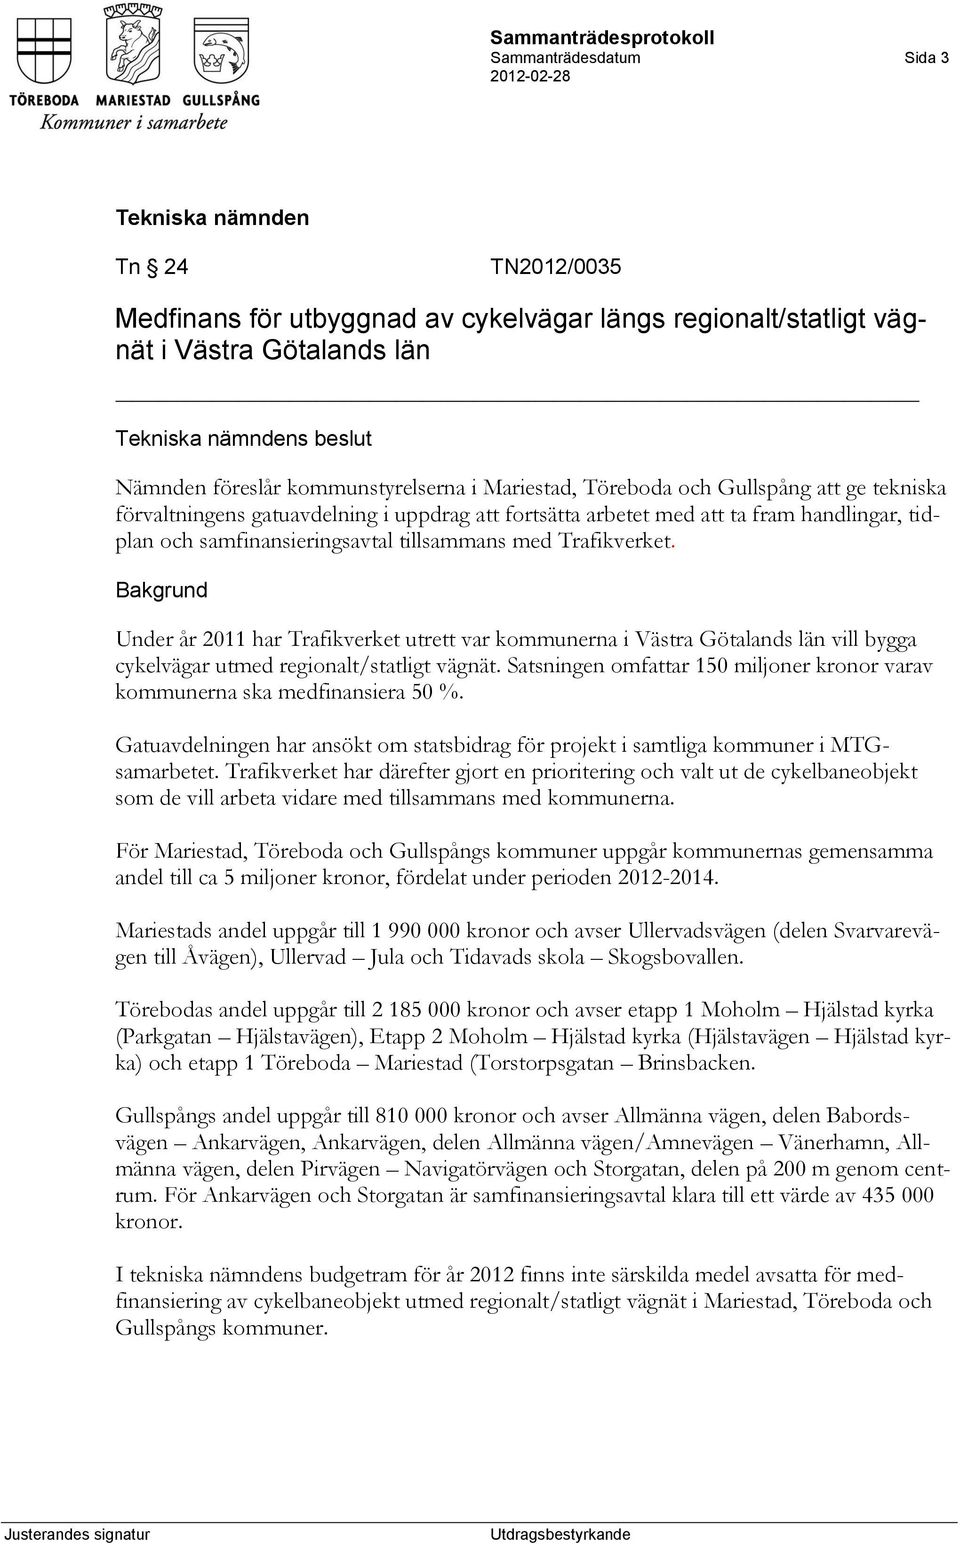 Under år 2011 har Trafikverket utrett var kommunerna i Västra Götalands län vill bygga cykelvägar utmed regionalt/statligt vägnät.